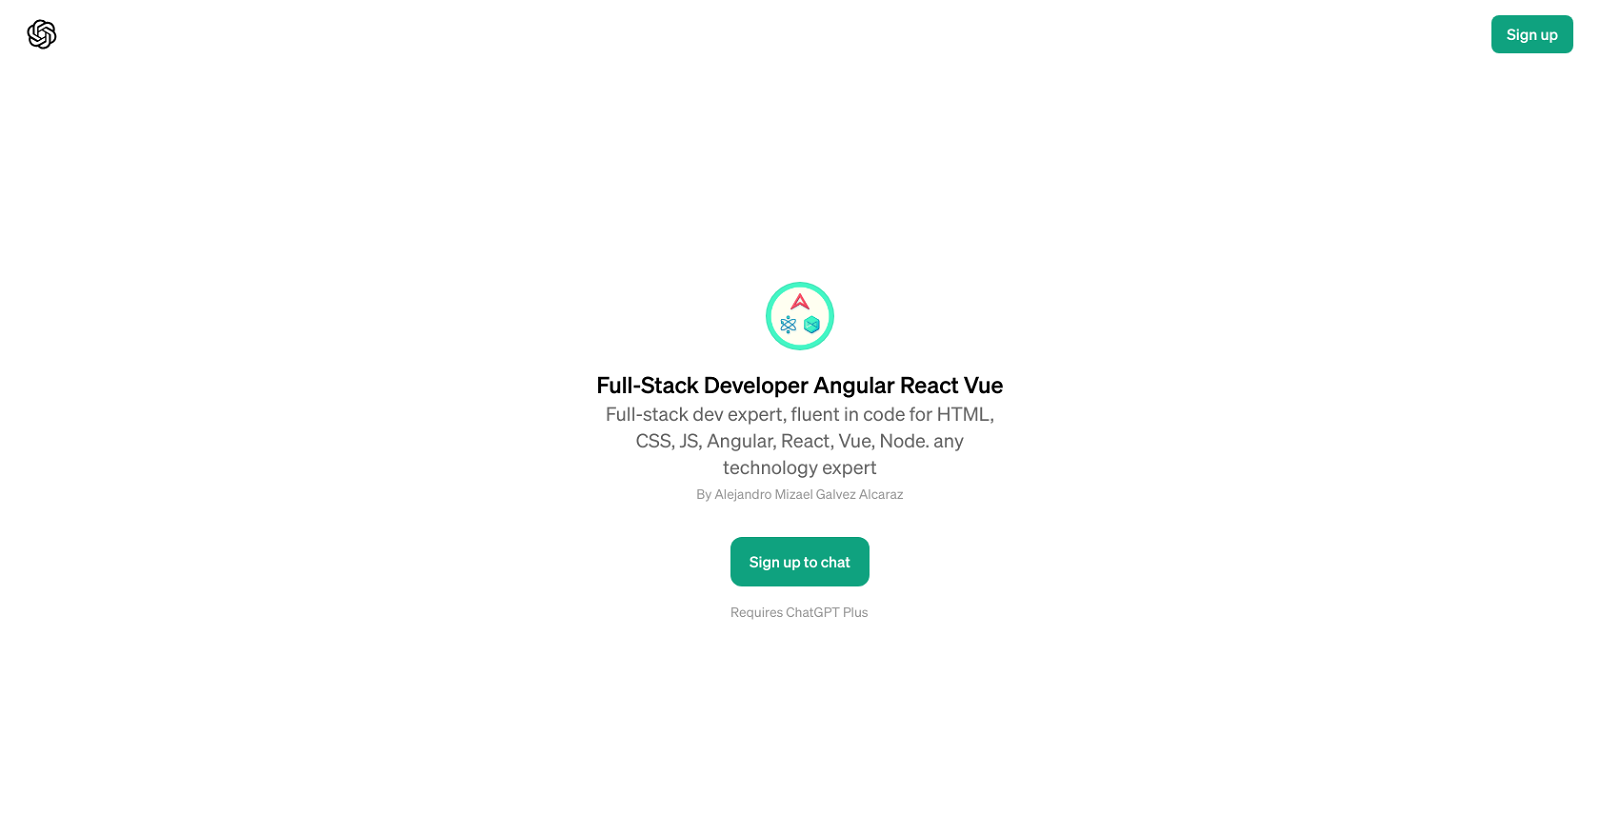 Full-Stack Developer Angular React Vue GPT website